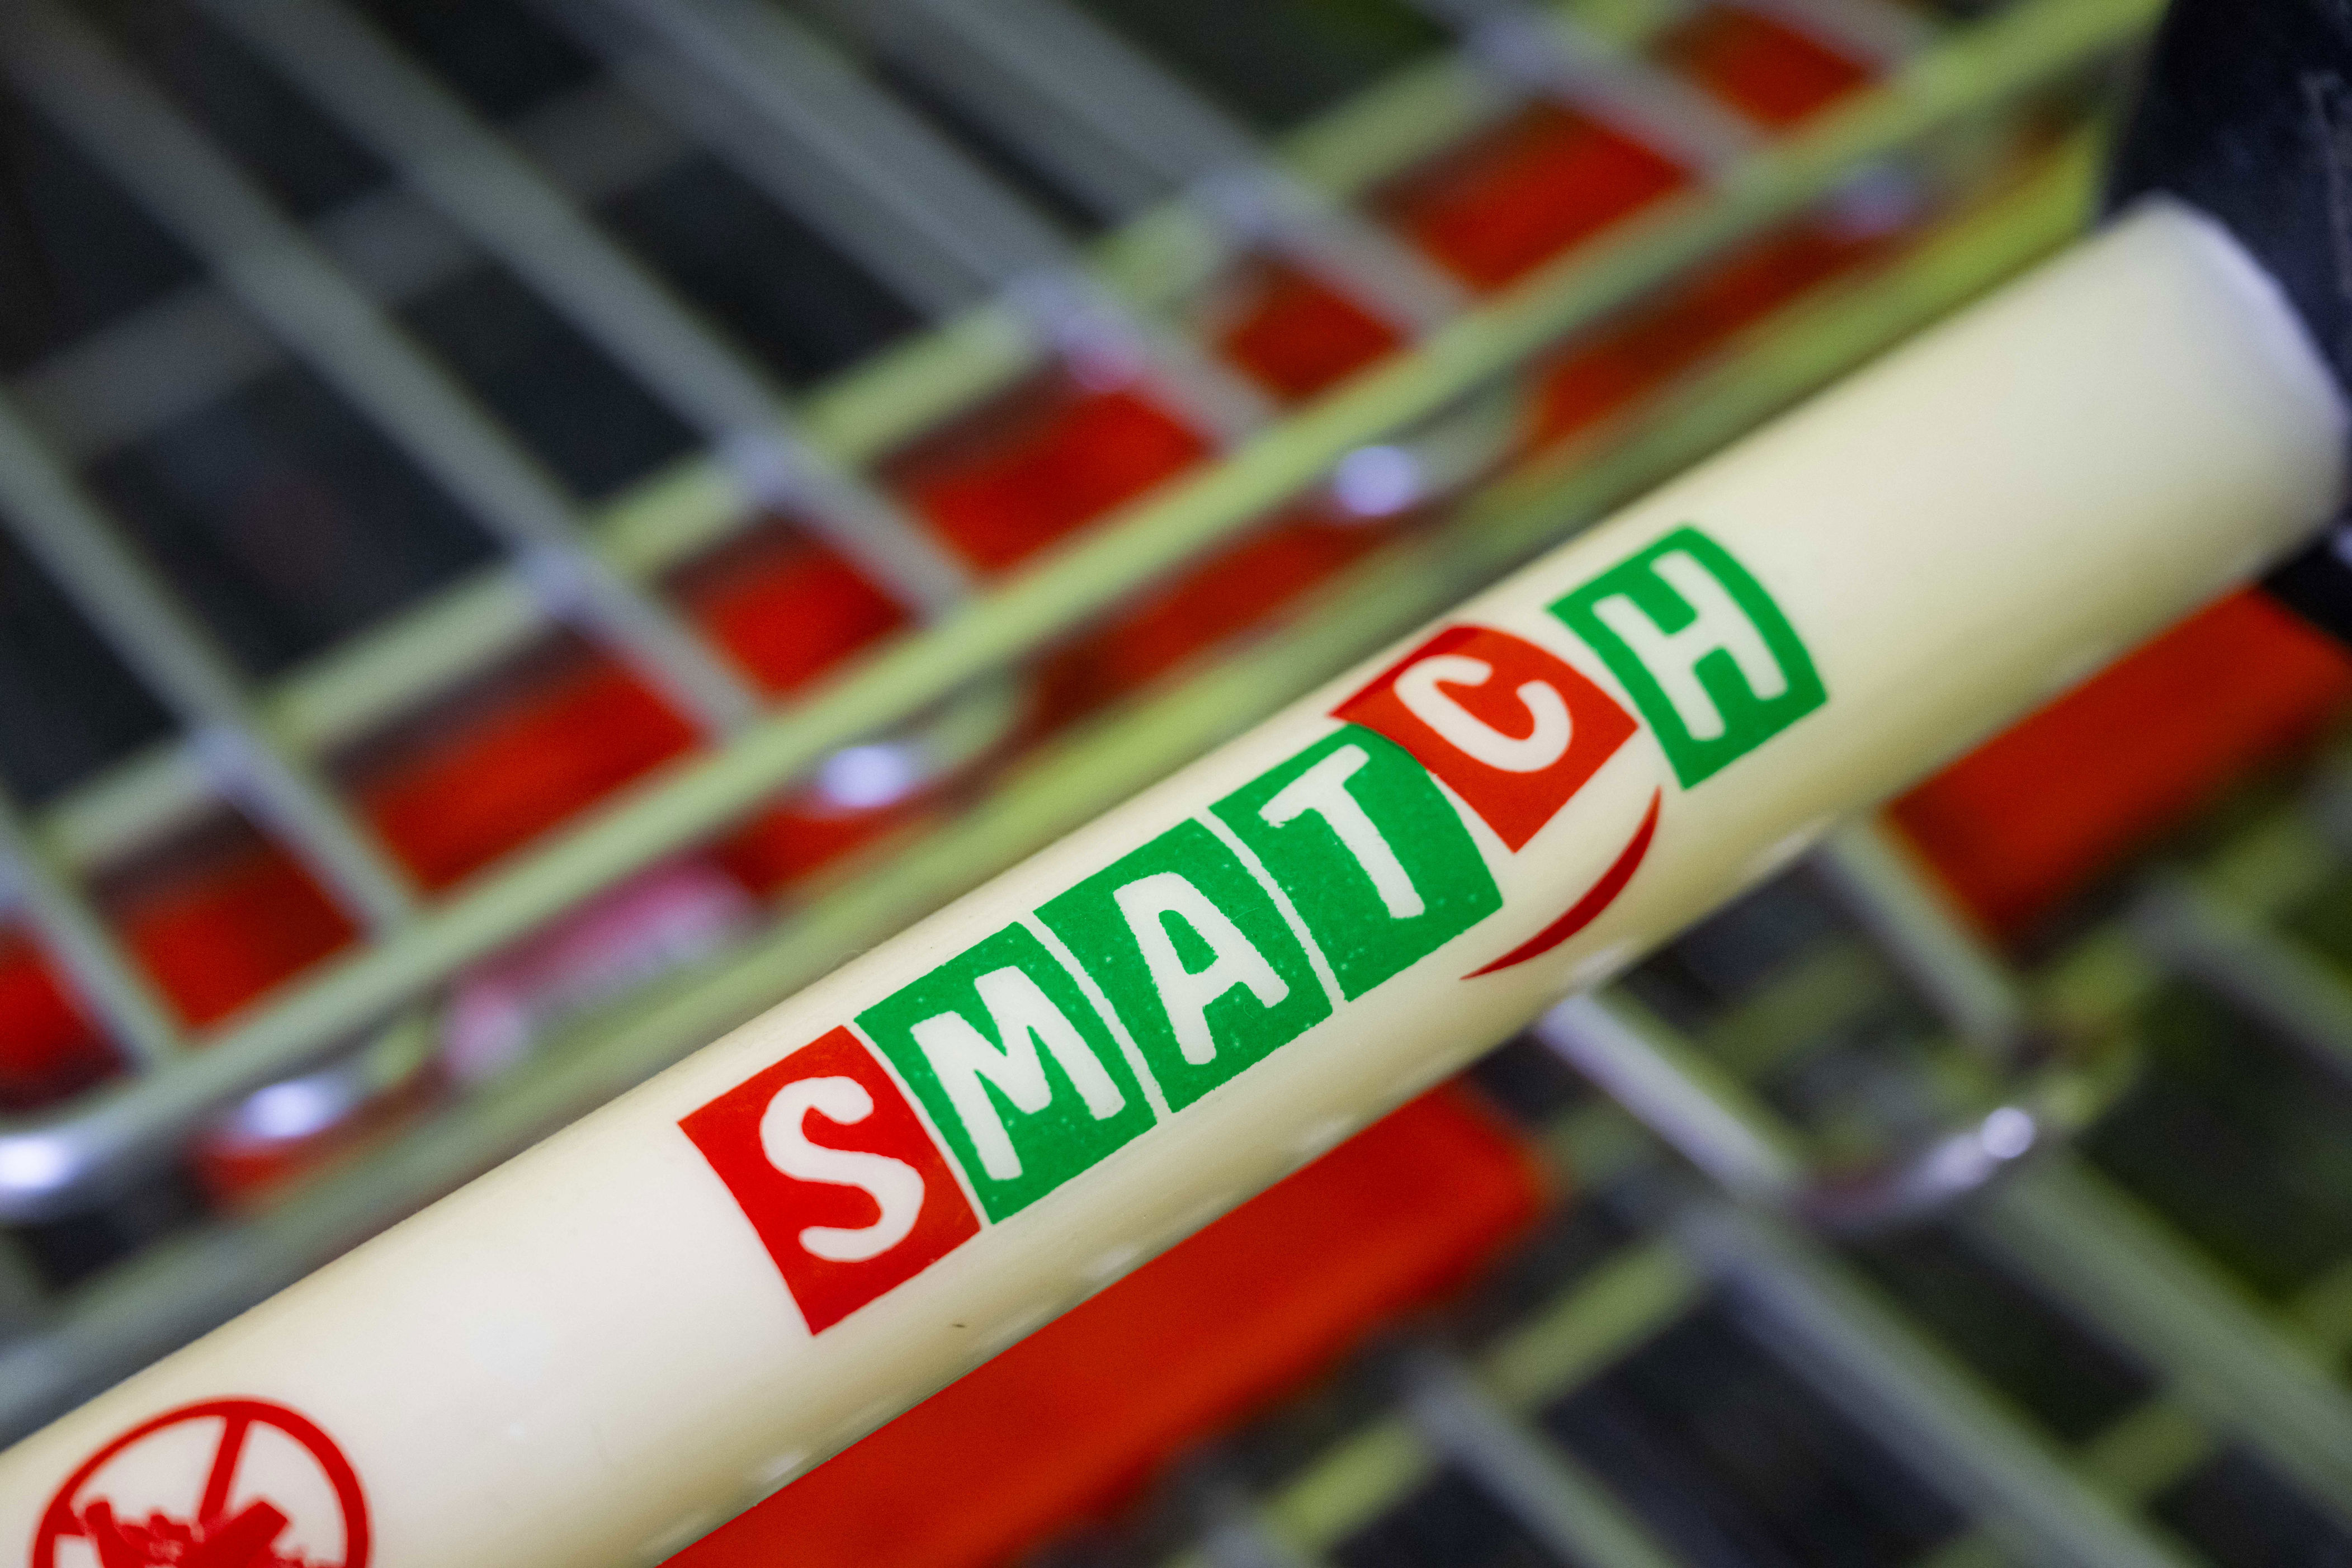 match & smatch - l'abc approuve l'acquisition de 54 des 57 magasins repris par colruyt